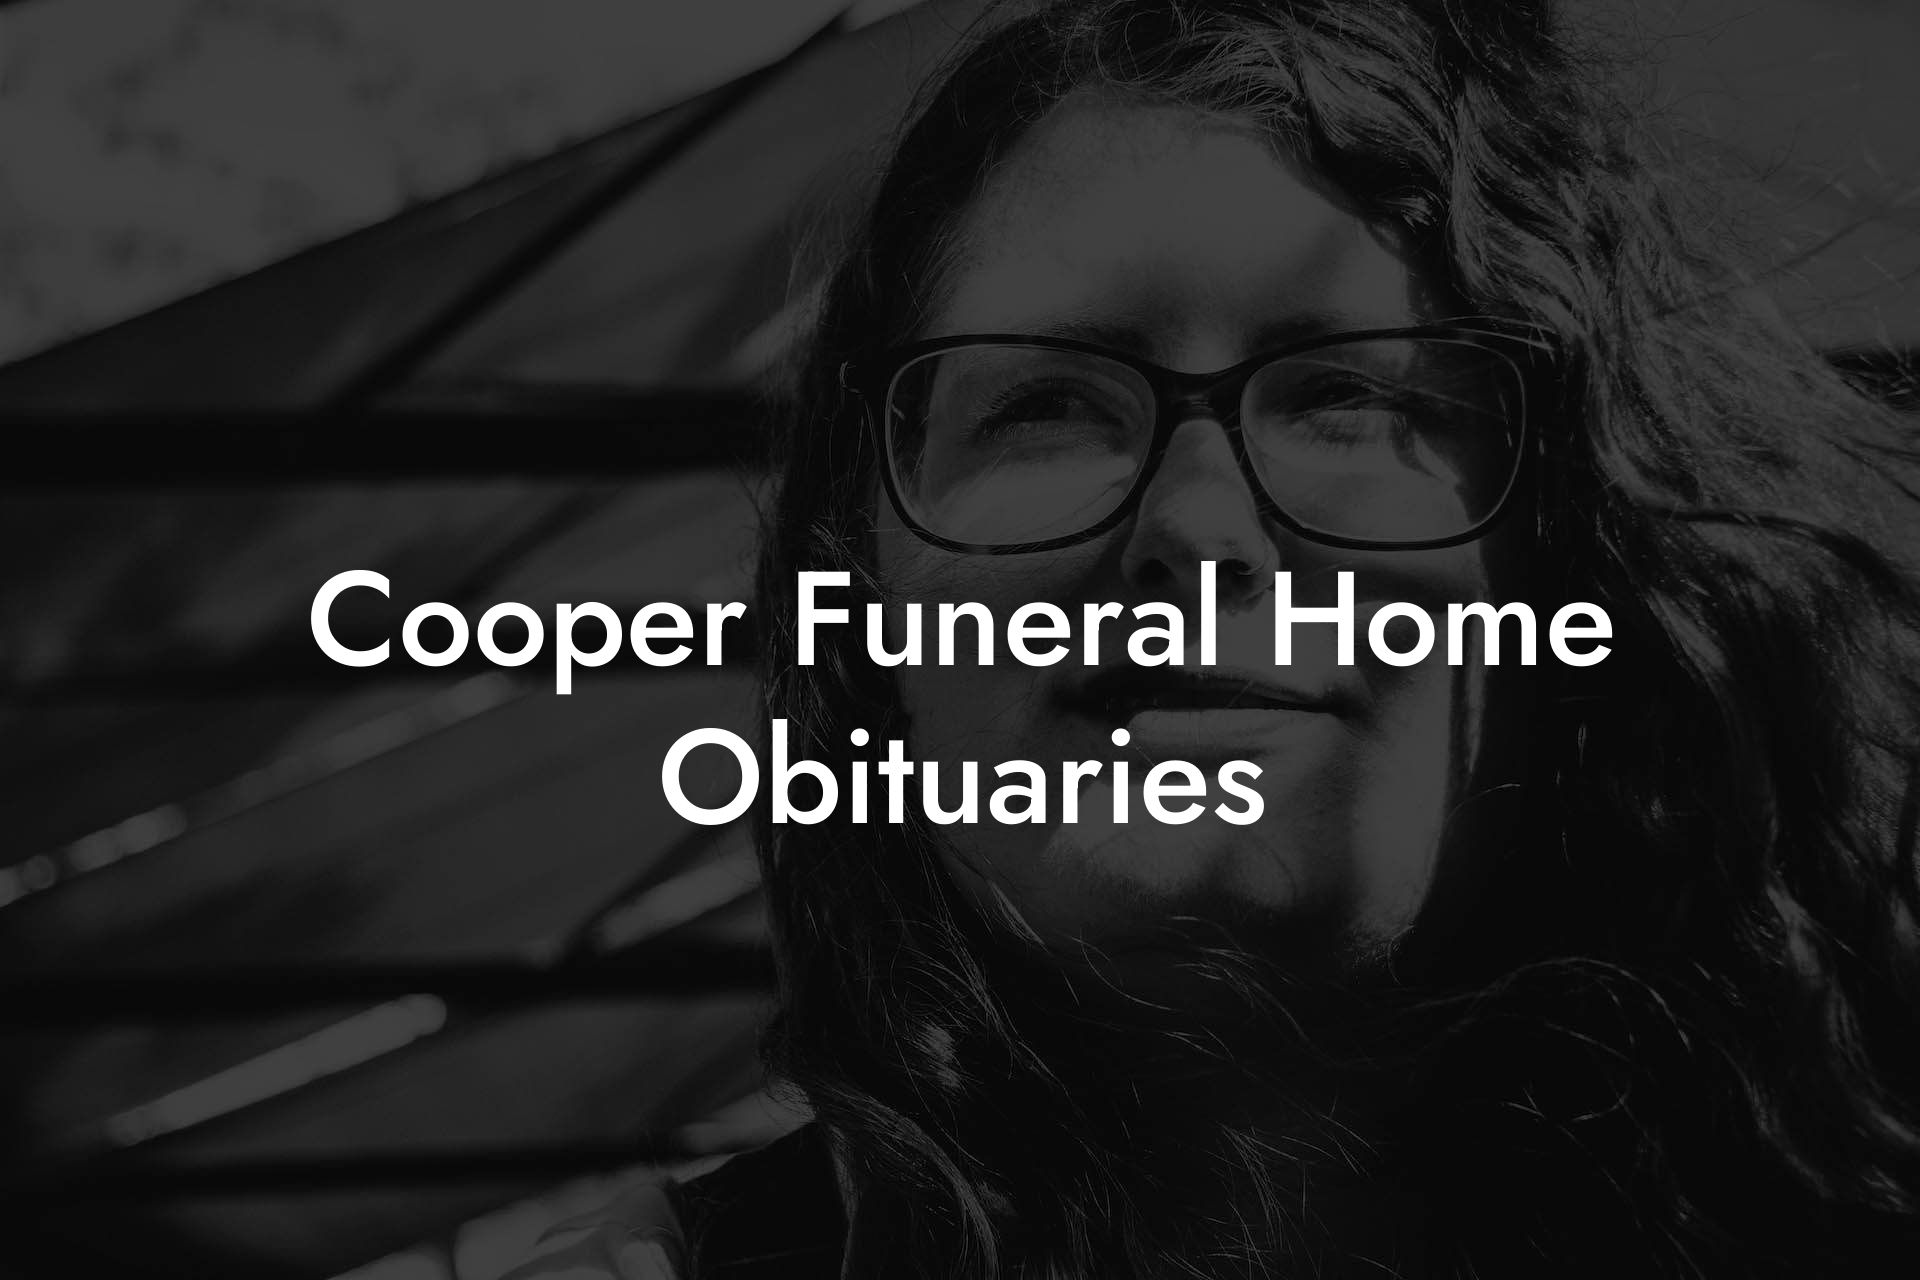 Cooper Funeral Home Obituaries